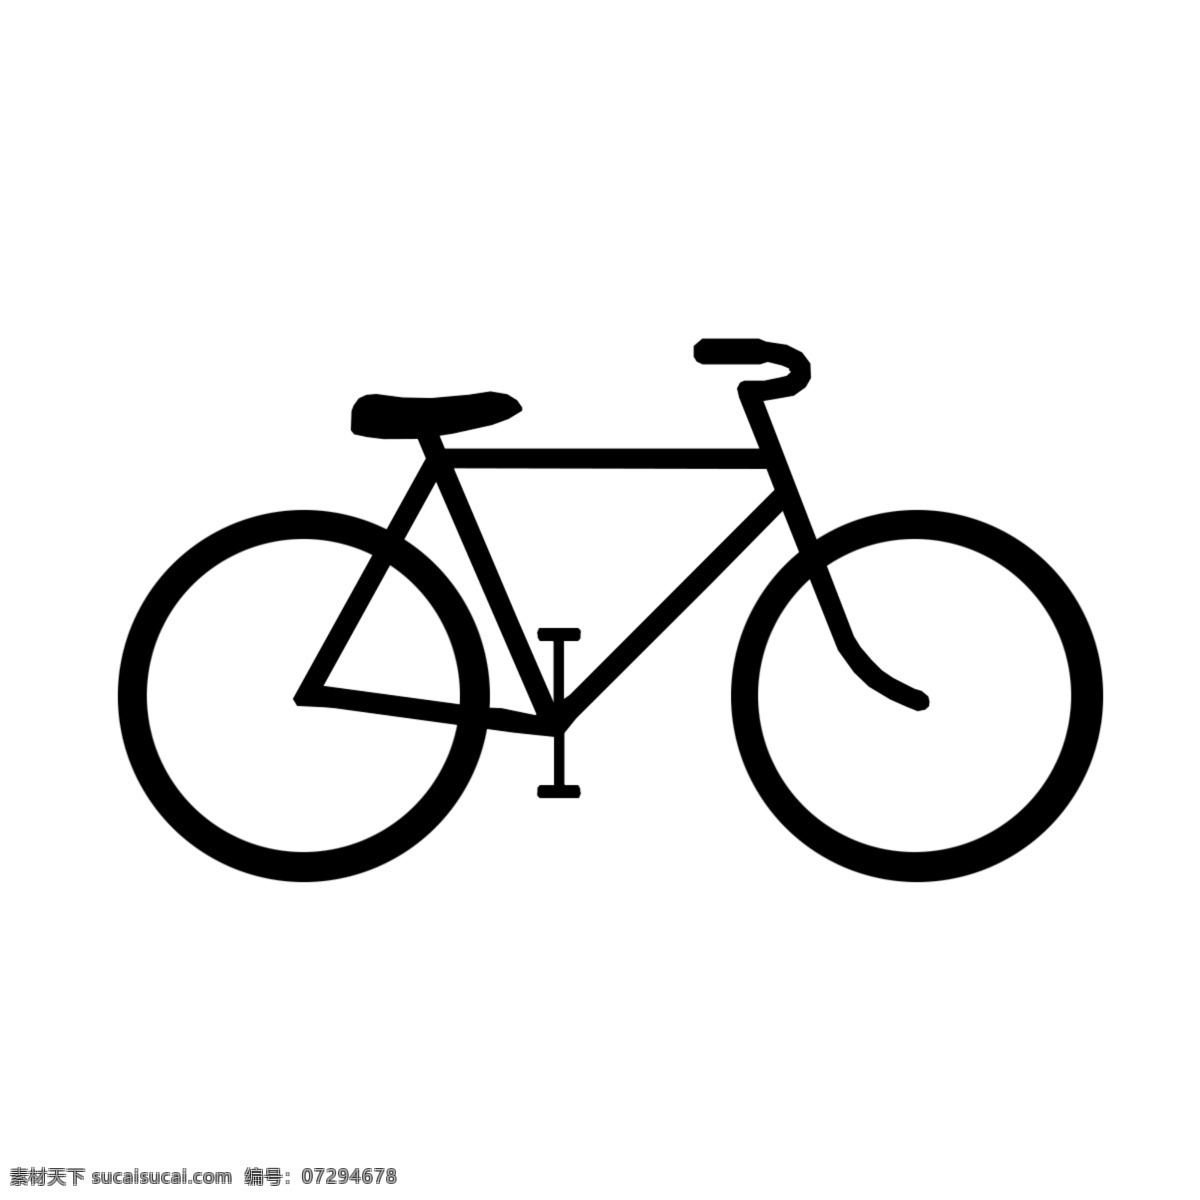 自行车 剪影 矢量图 单车剪影 黑色车 ps素材 分层